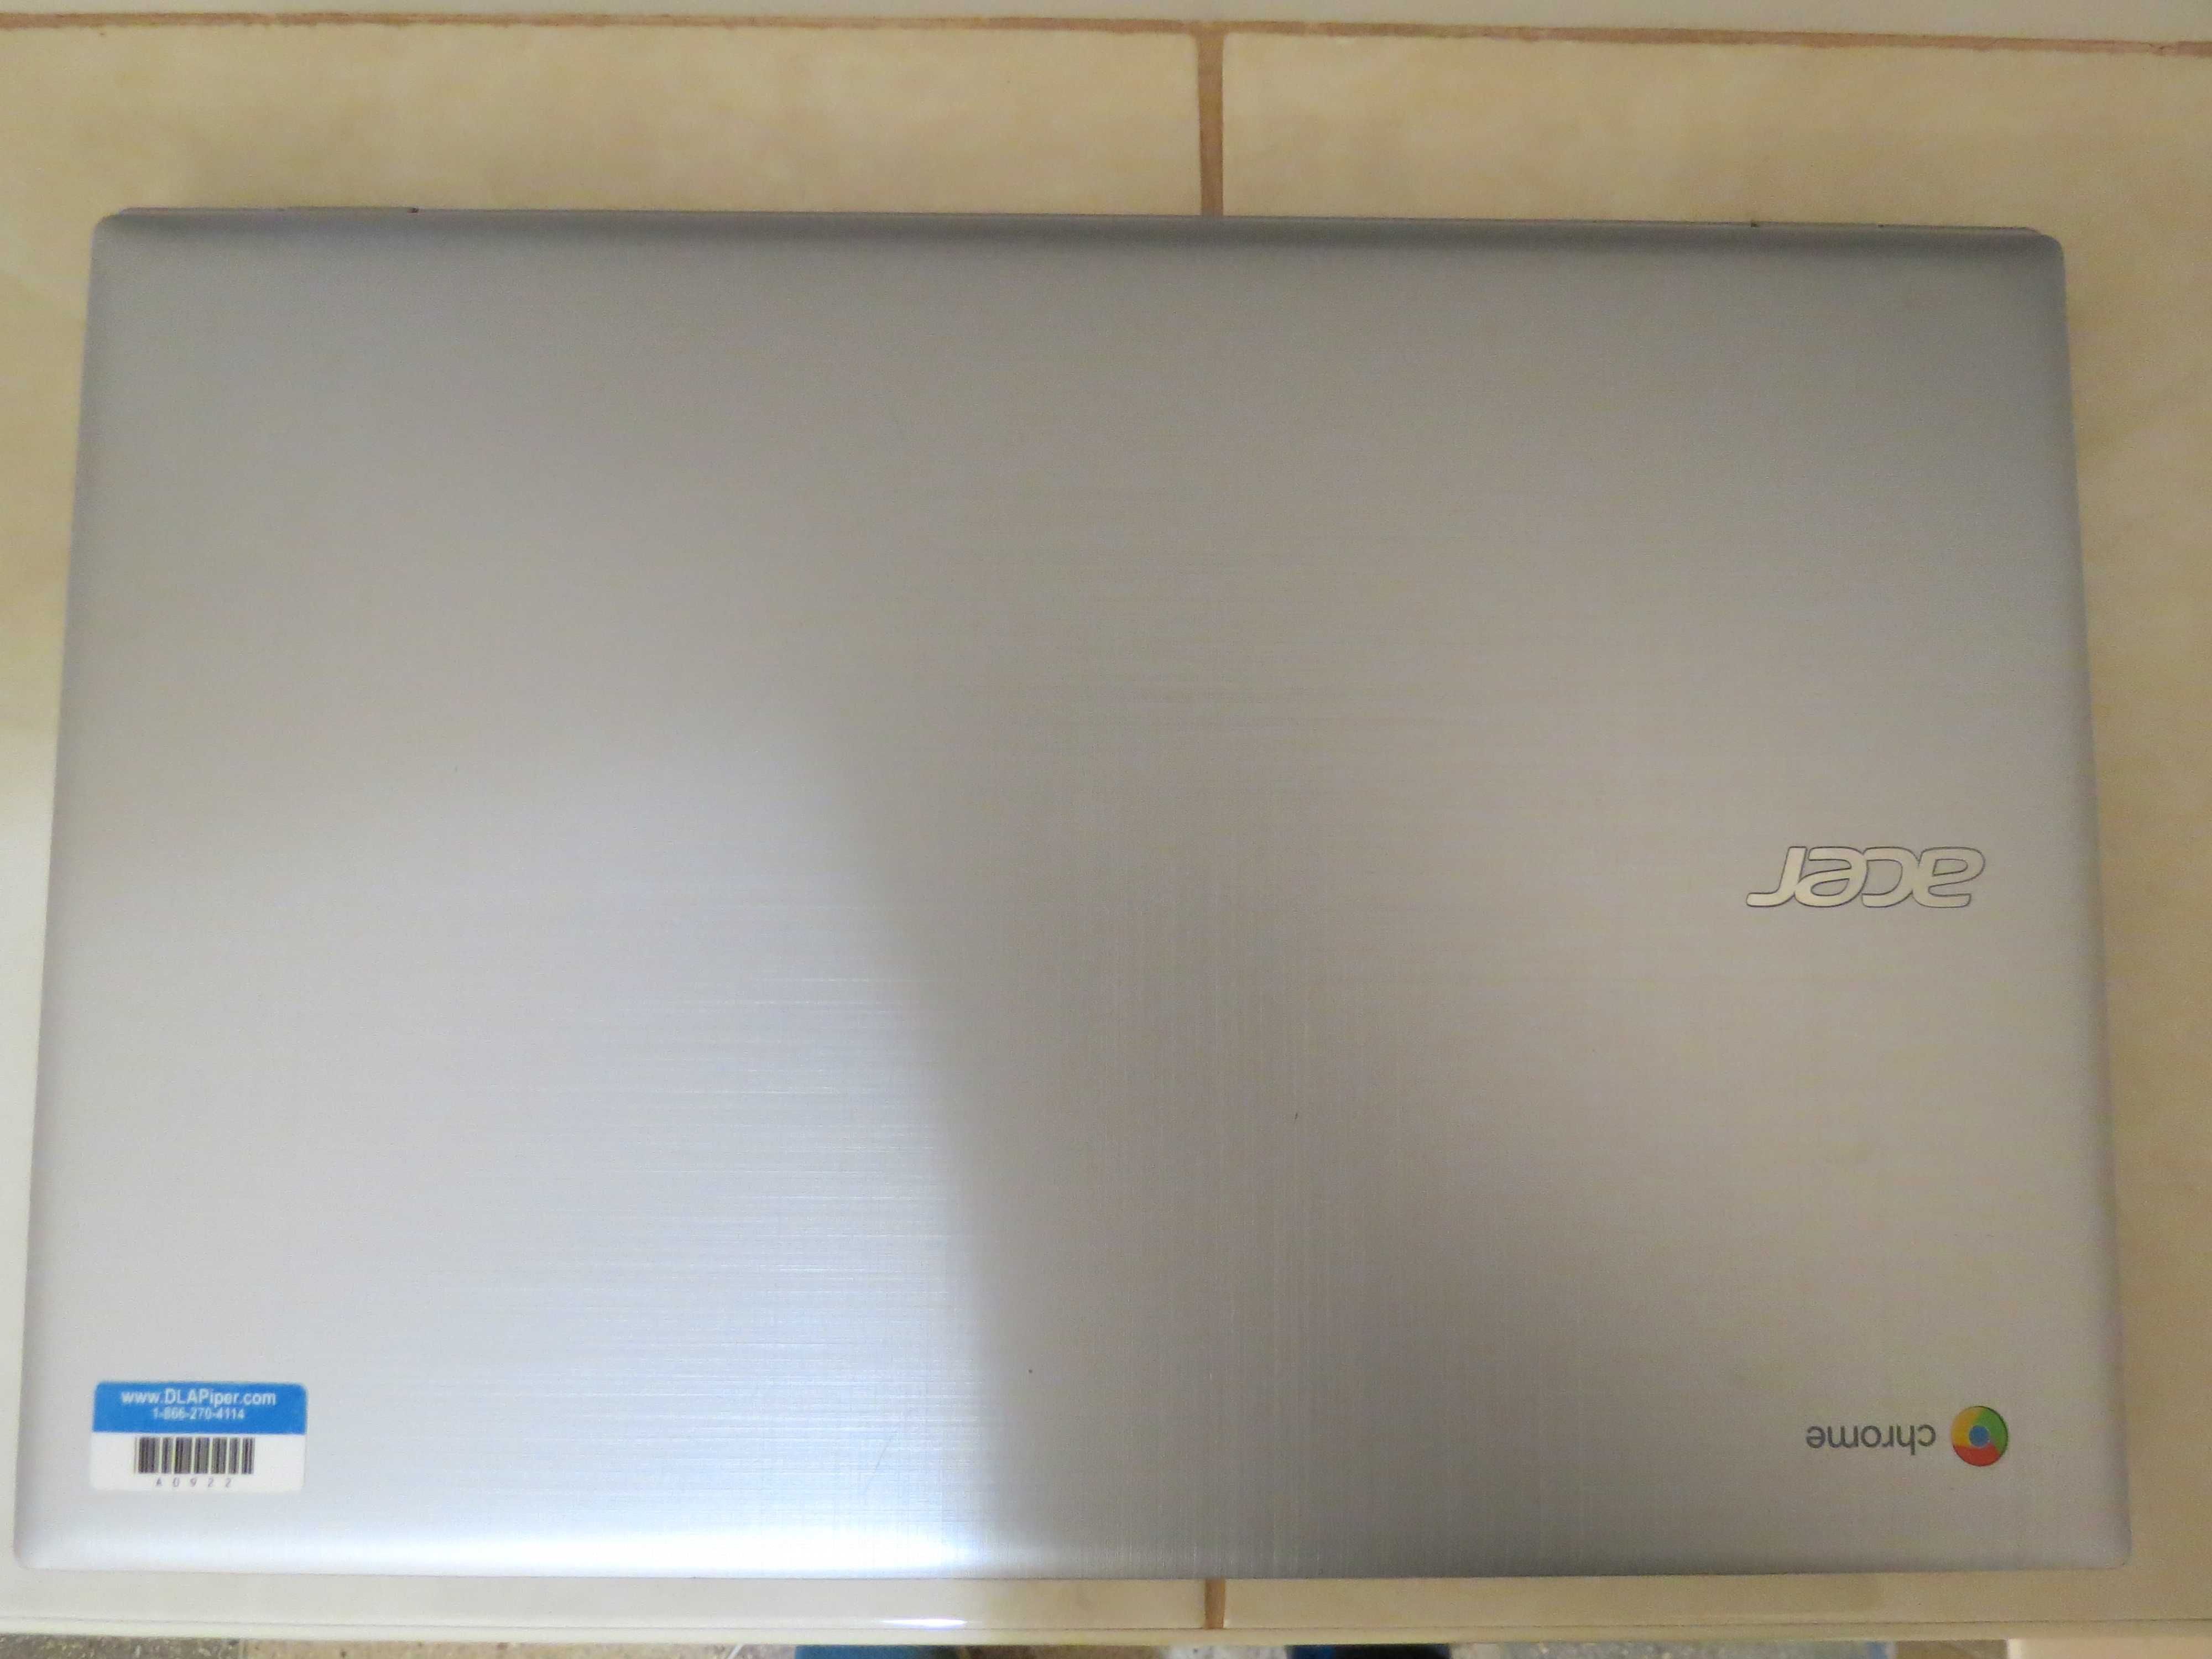 Ультратонкий сенсорный хромбук Acer 315 4/32Gb PlayMarket IPS FullHD